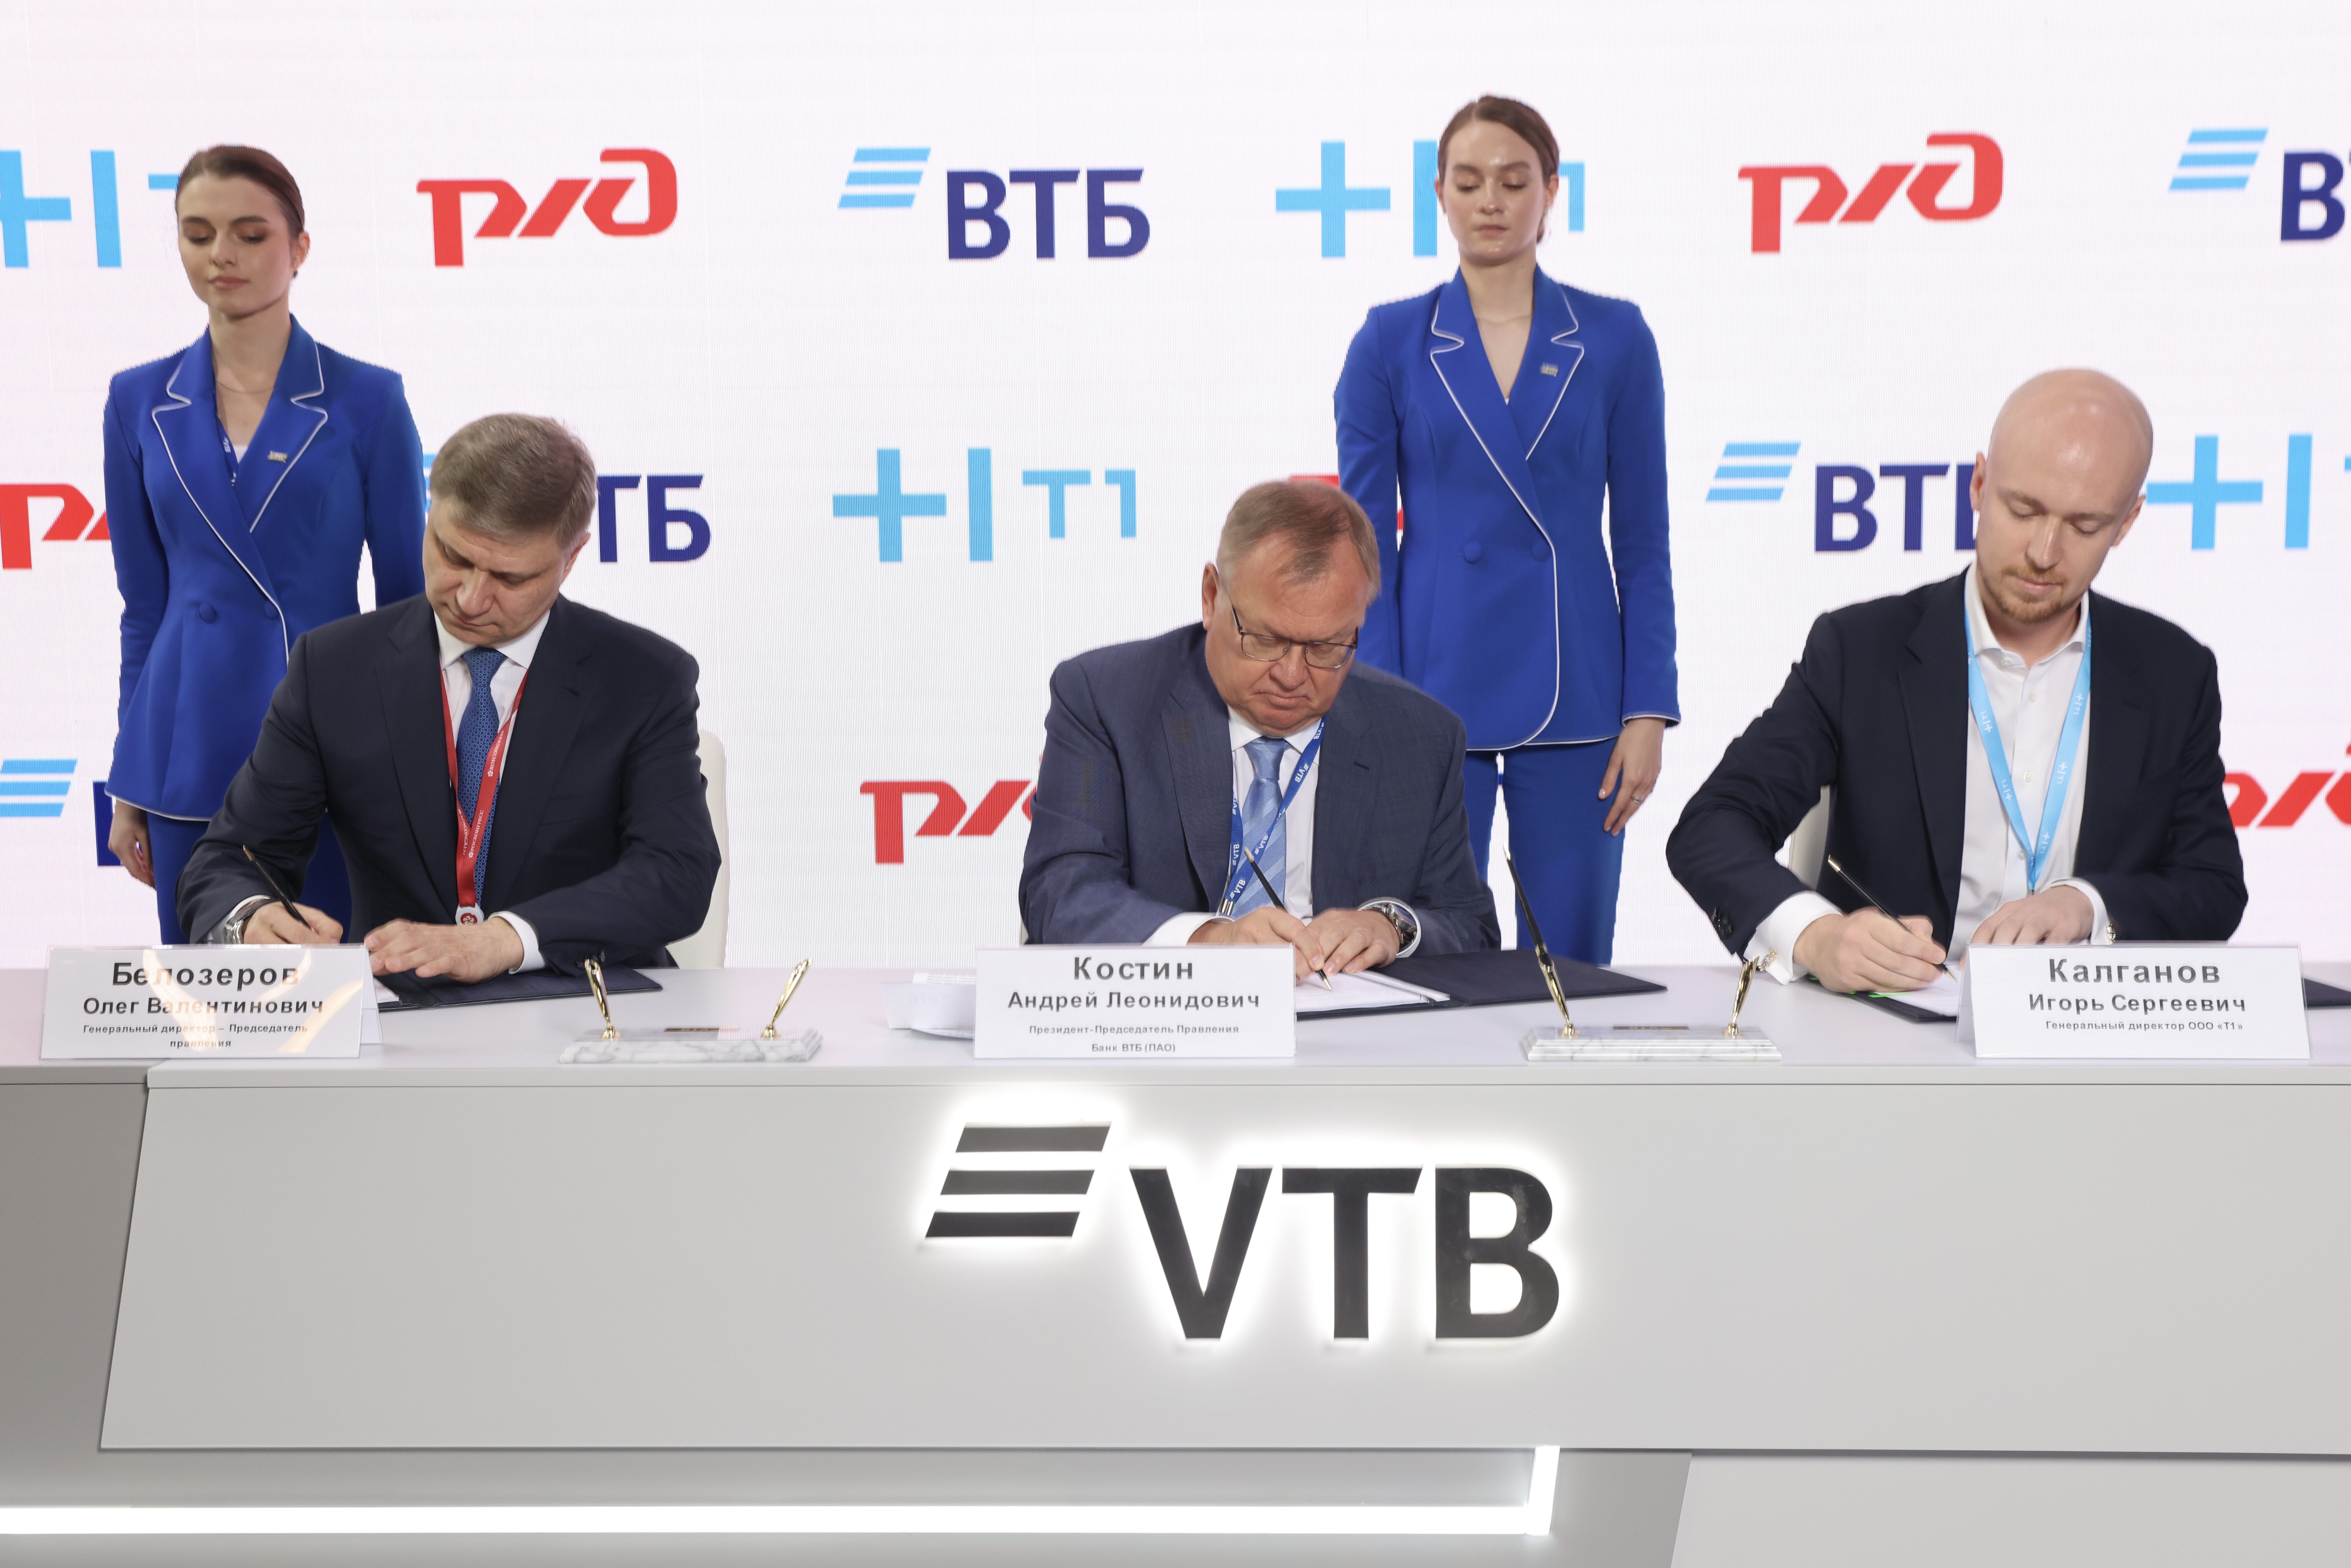 РЖД, Банк ВТБ и Т1 договорились о совместной работе над программными продуктами